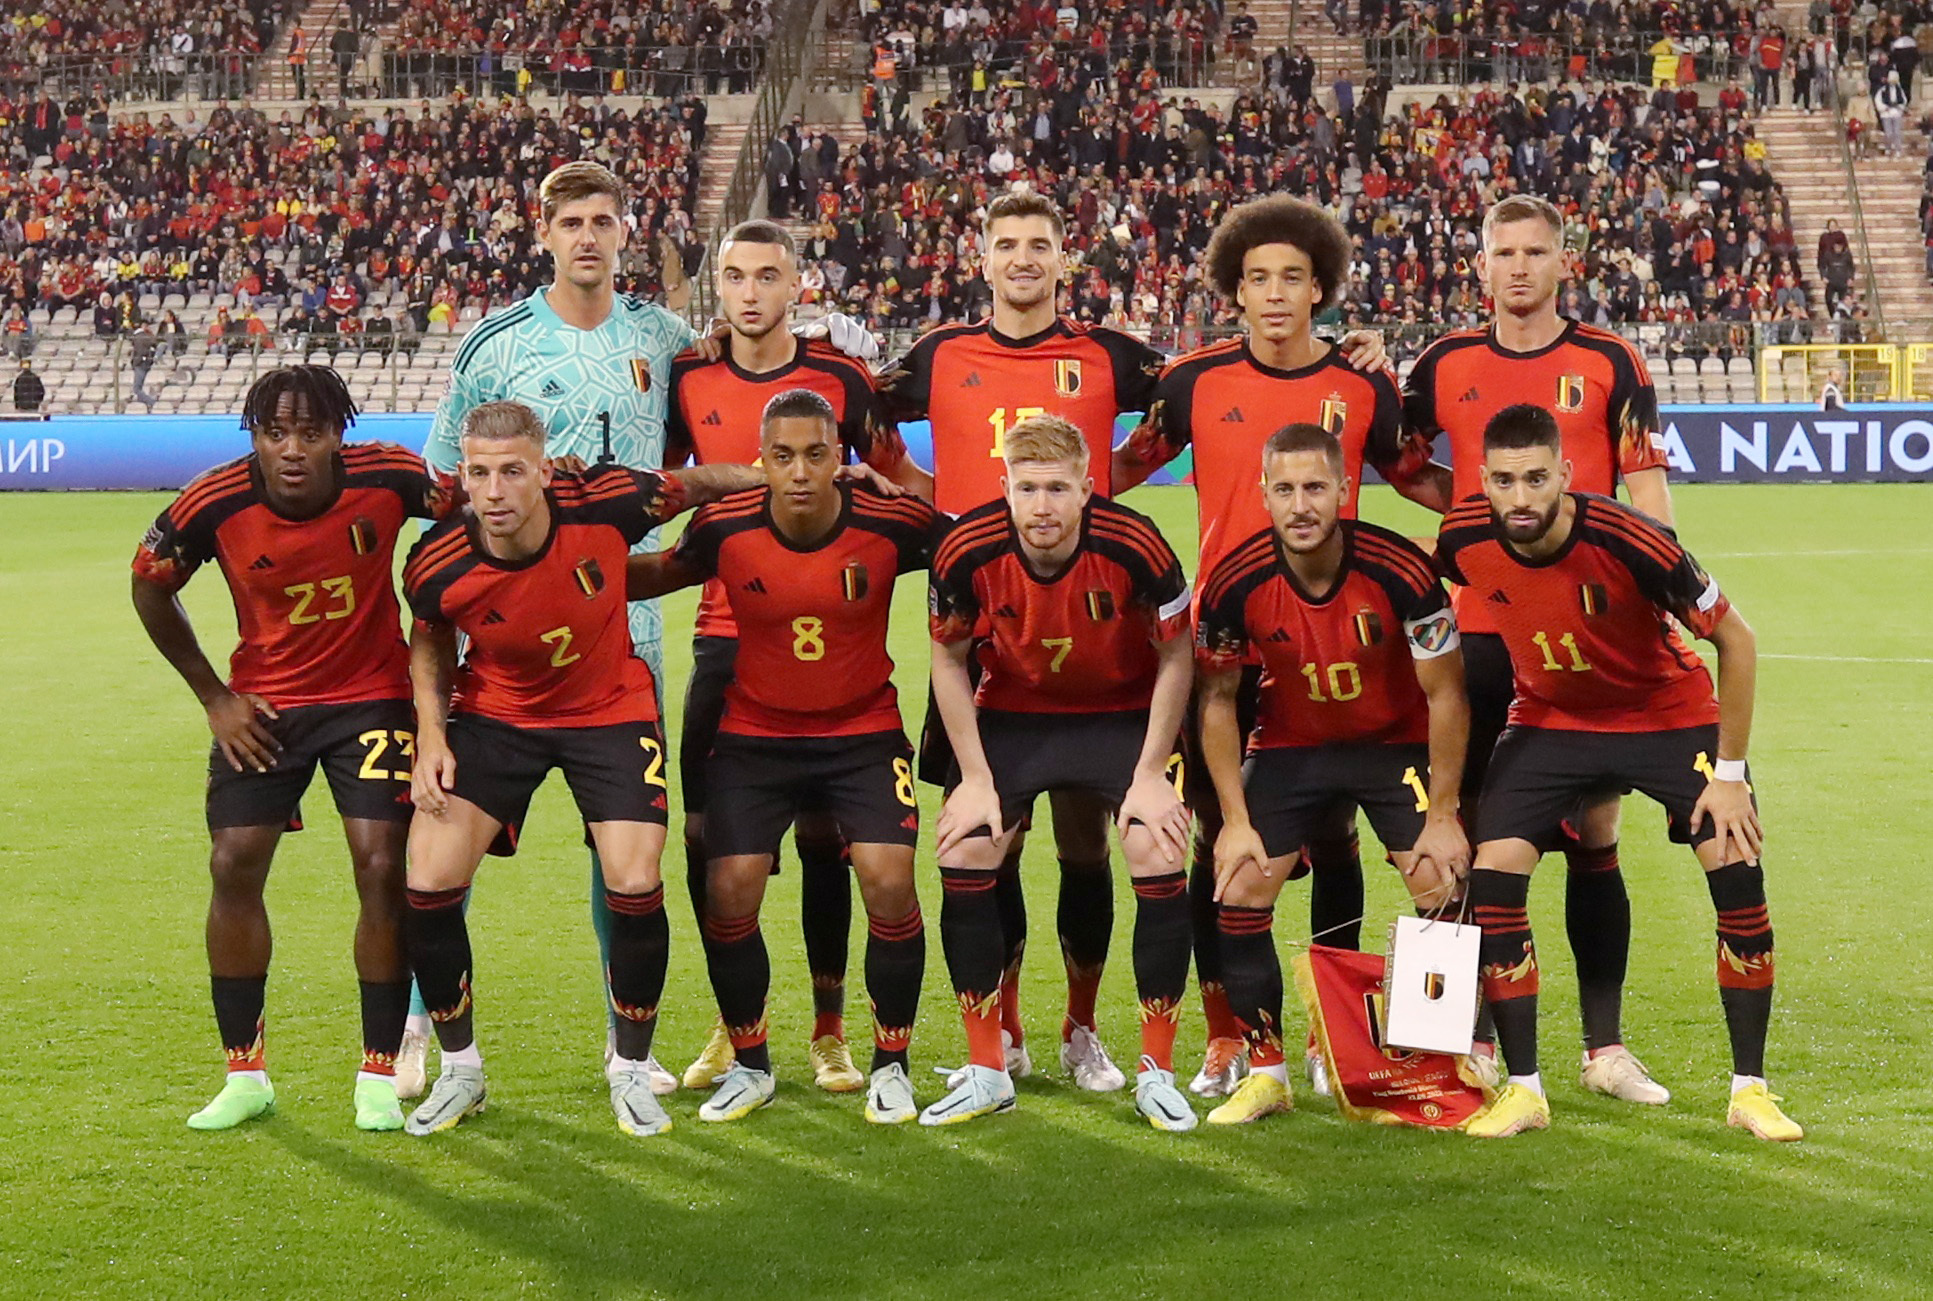 La generación dorada de Bélgica busca aprovechar su última chance en un Mundial (Foto: REUTERS)